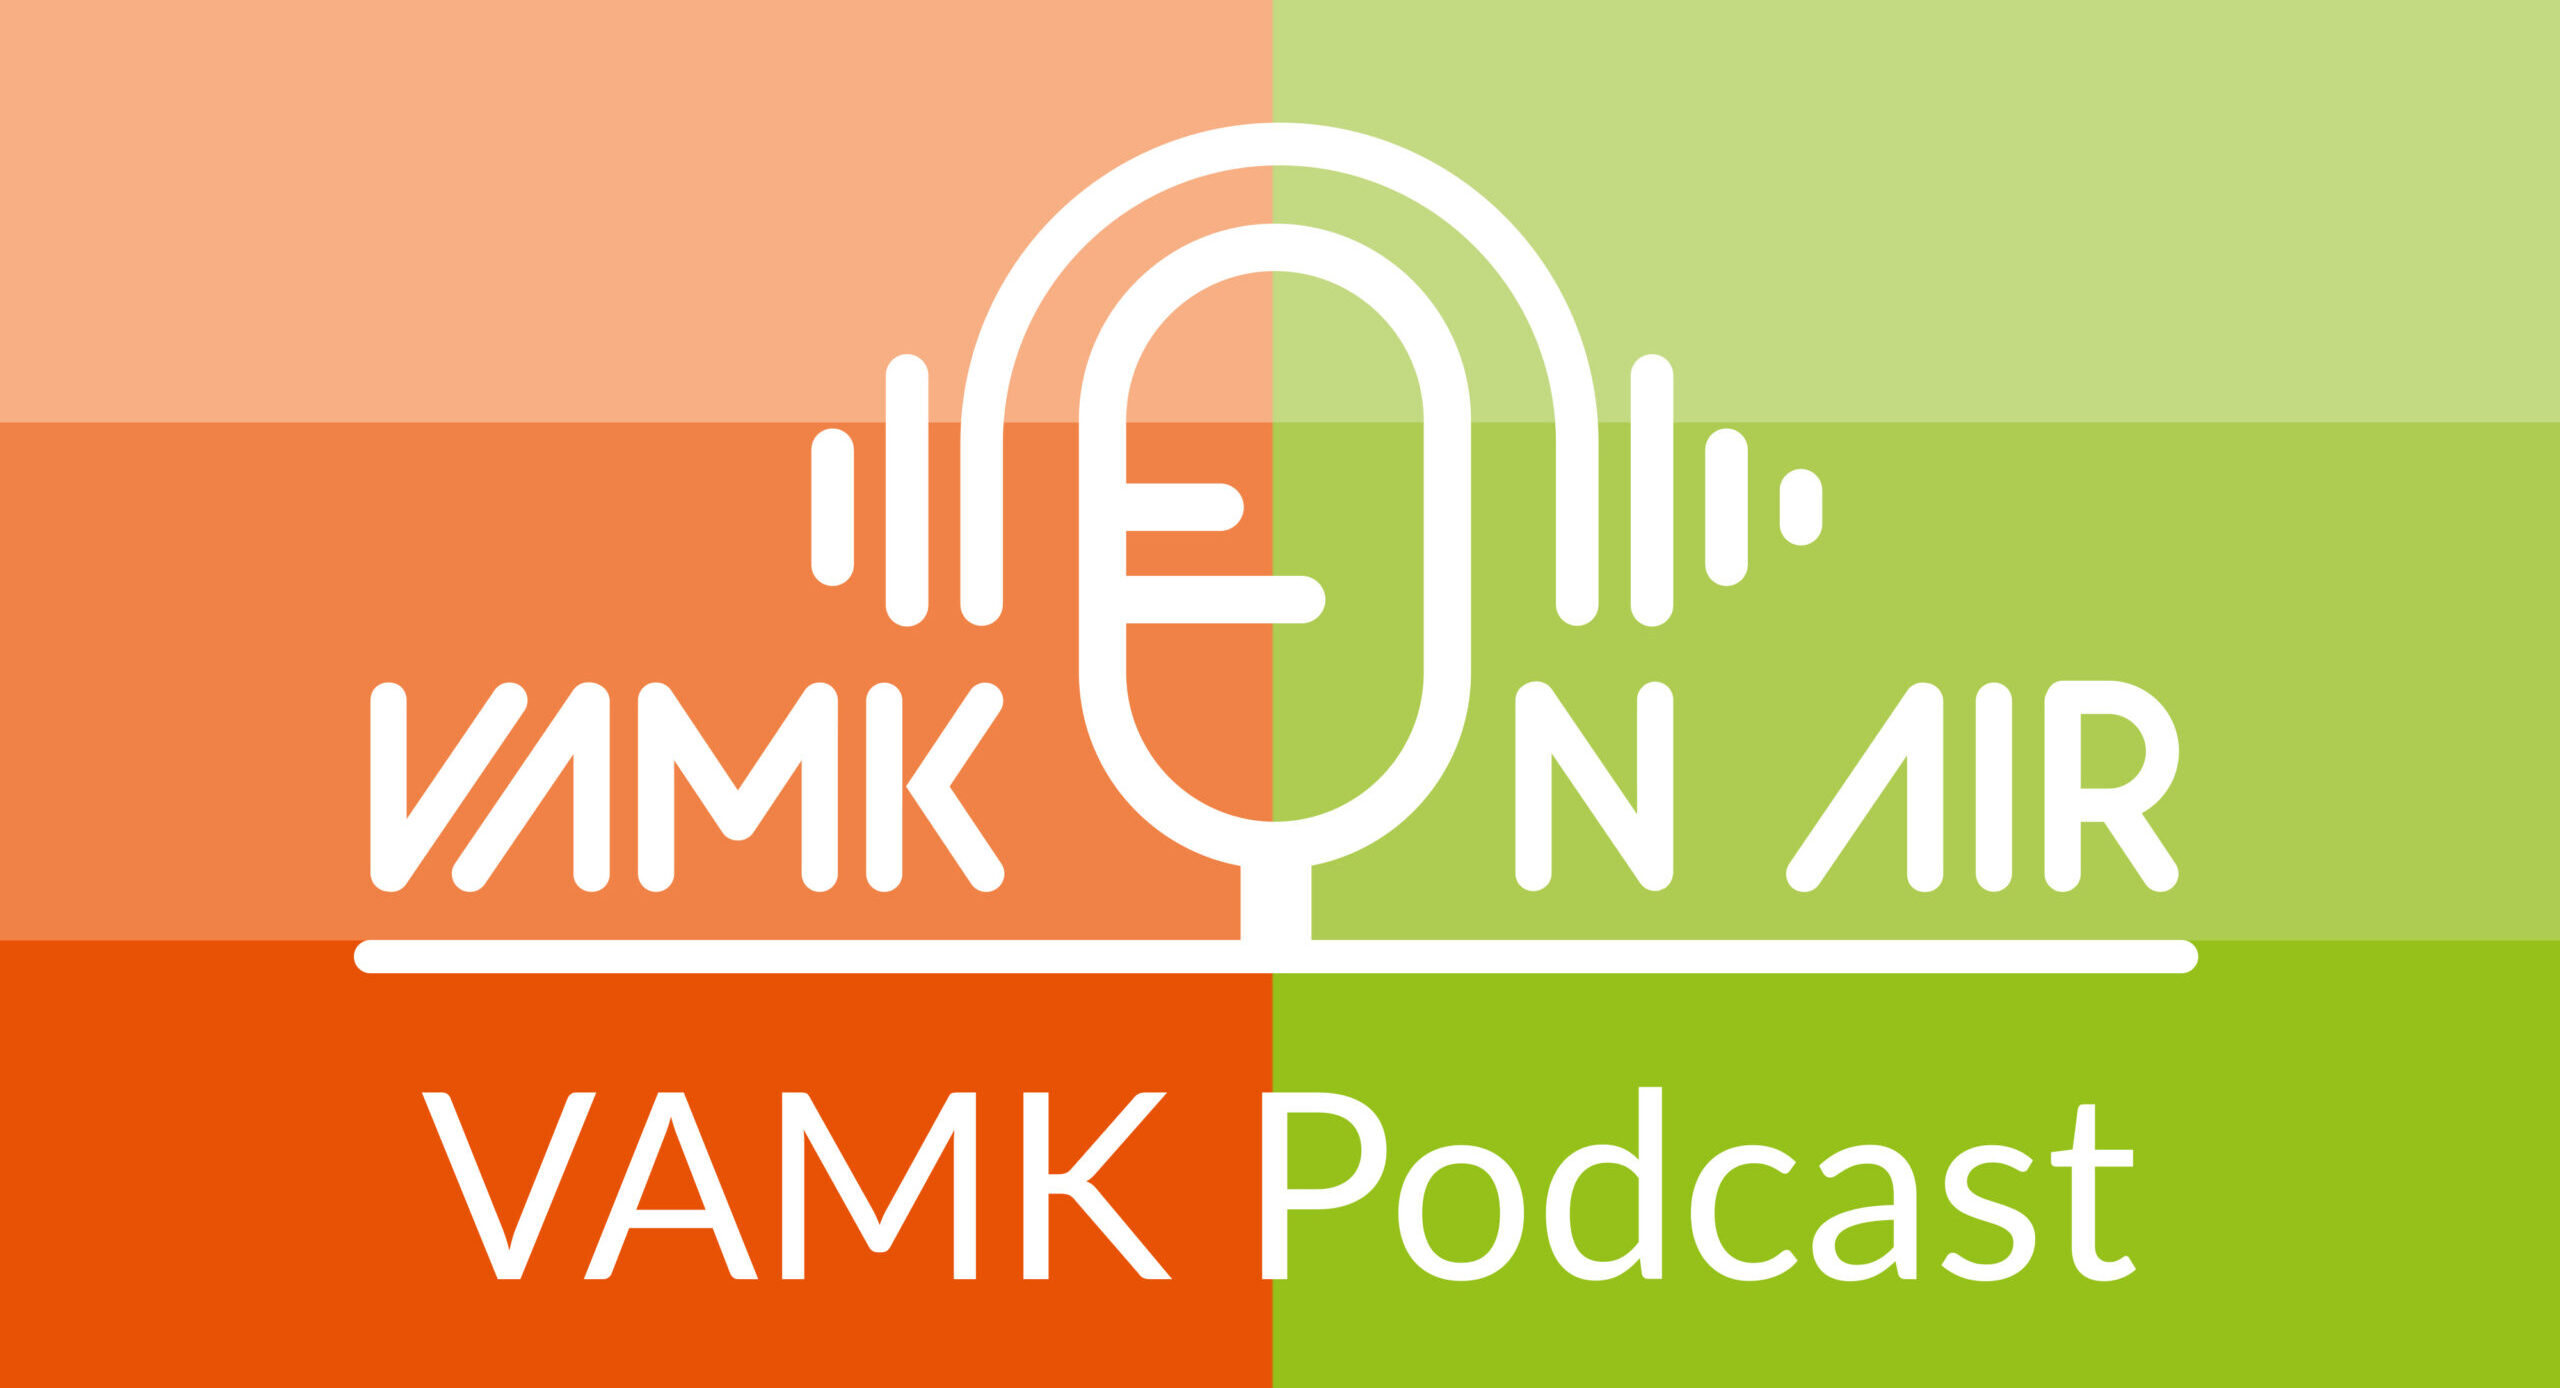 The VAMK ON AIR podcast